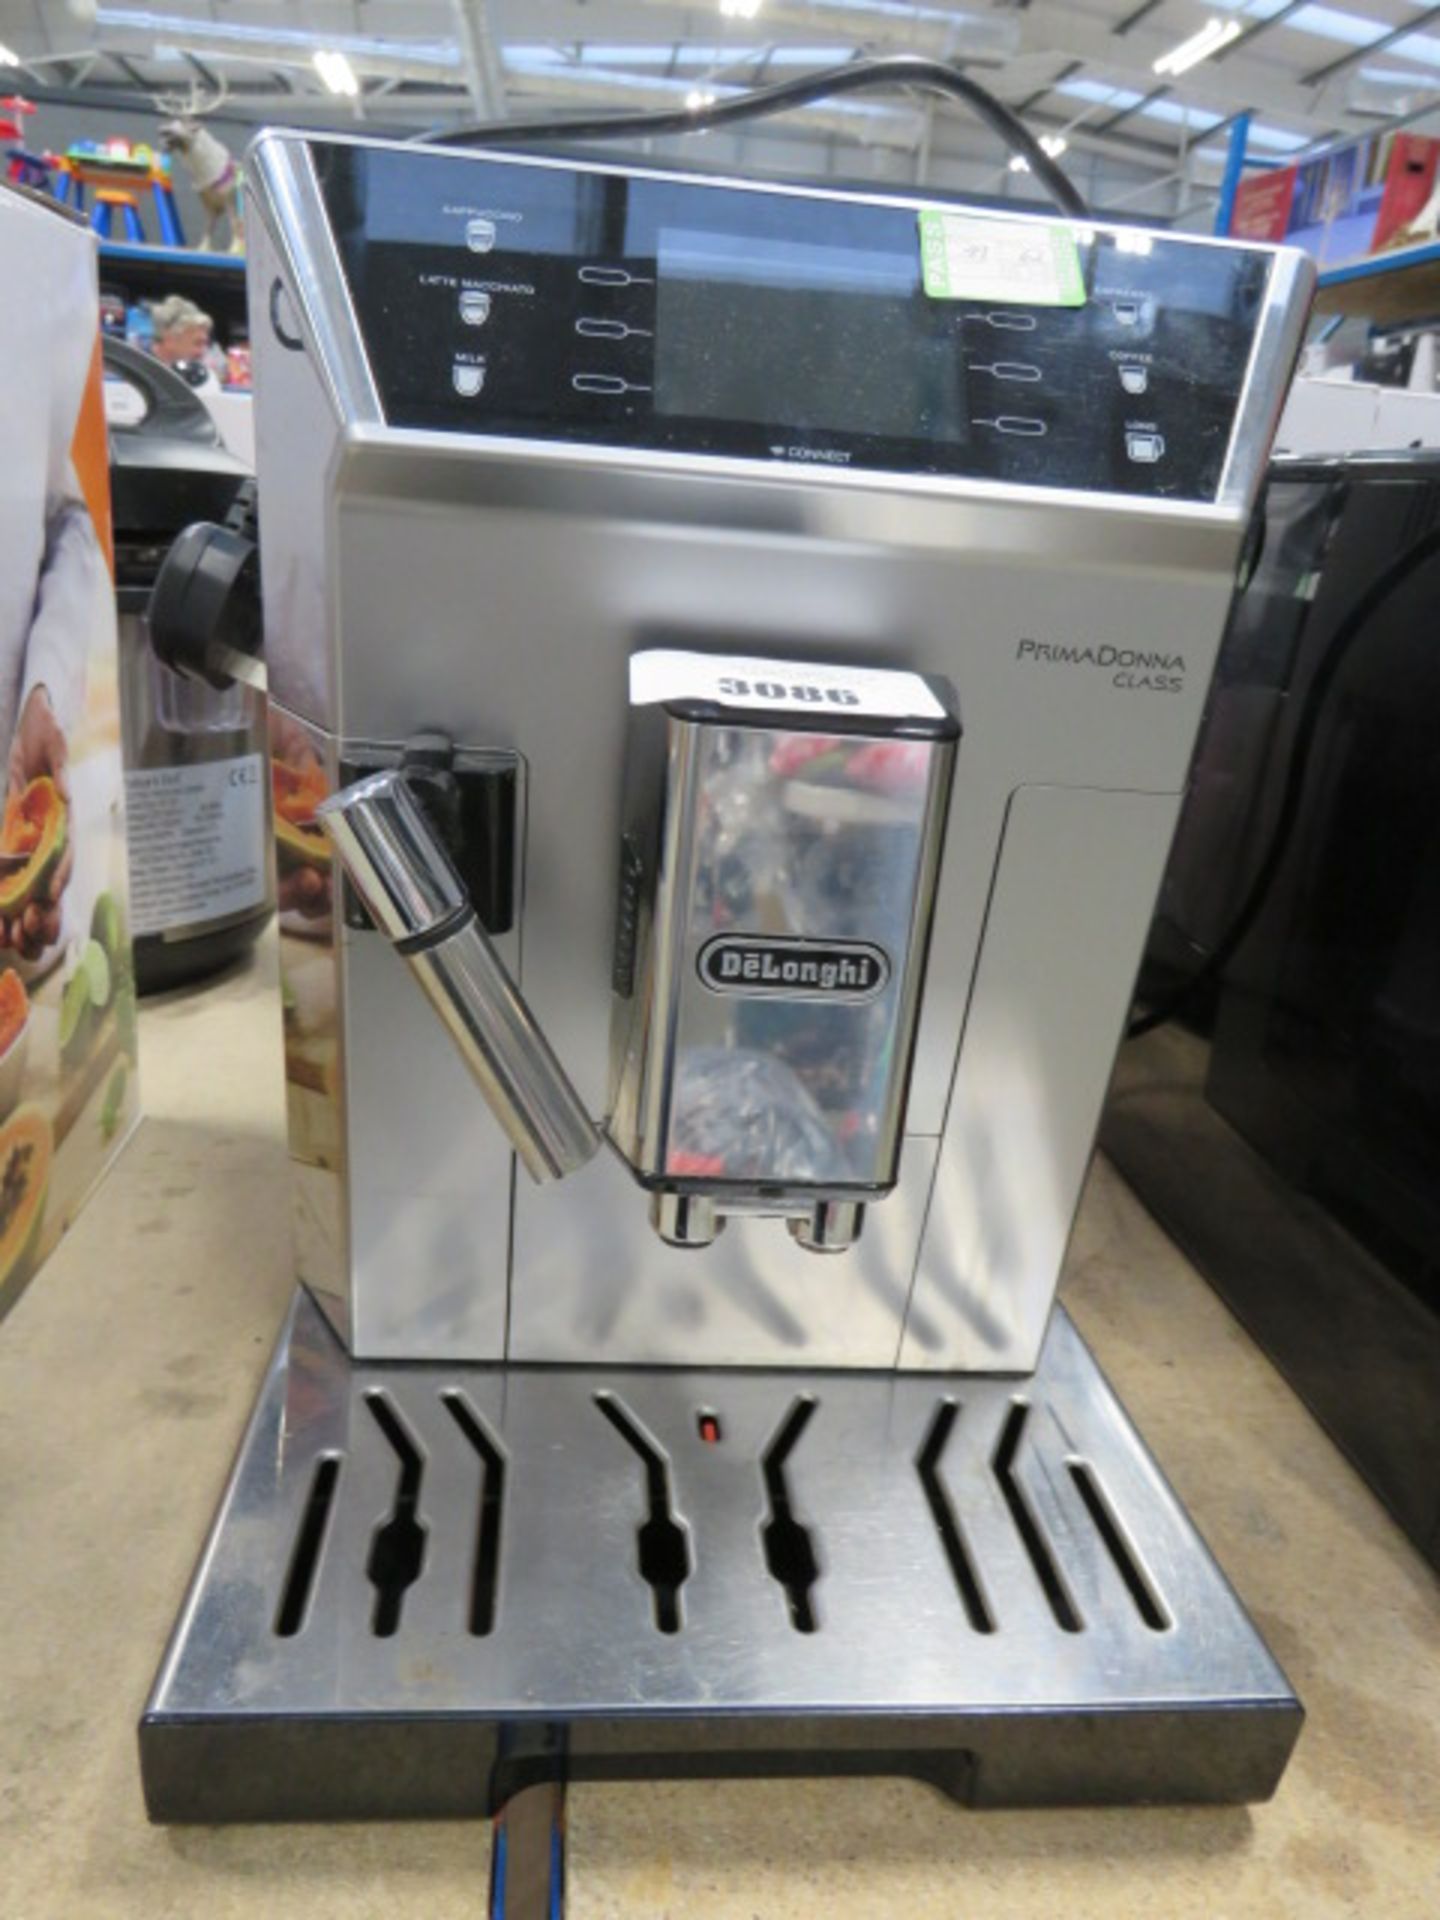 (TN62) - Unboxed delonghi prima donna class coffee machine, no accessories